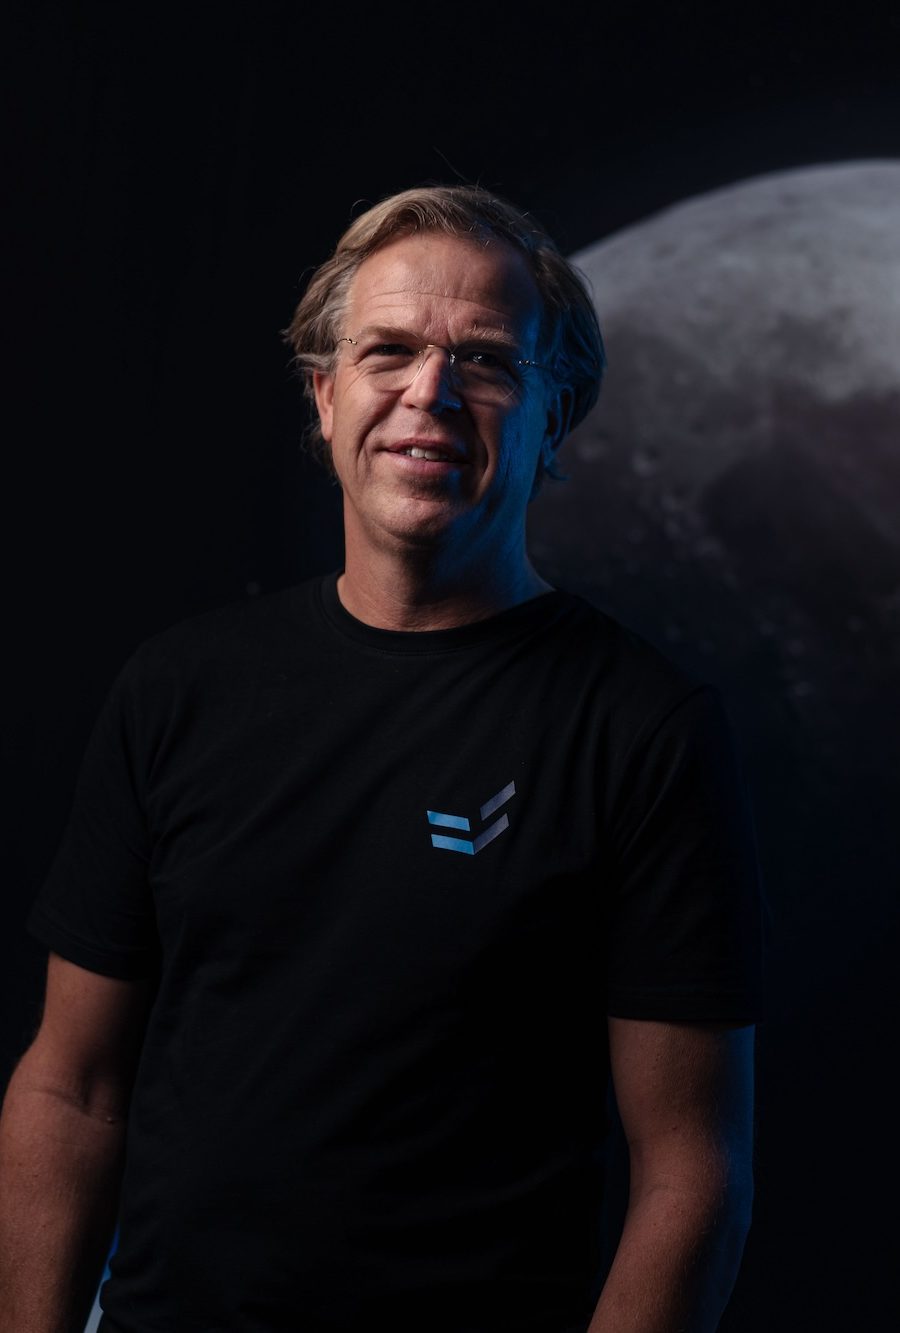 Simon van den Dries joins EnduroSat as a Head of Space Service